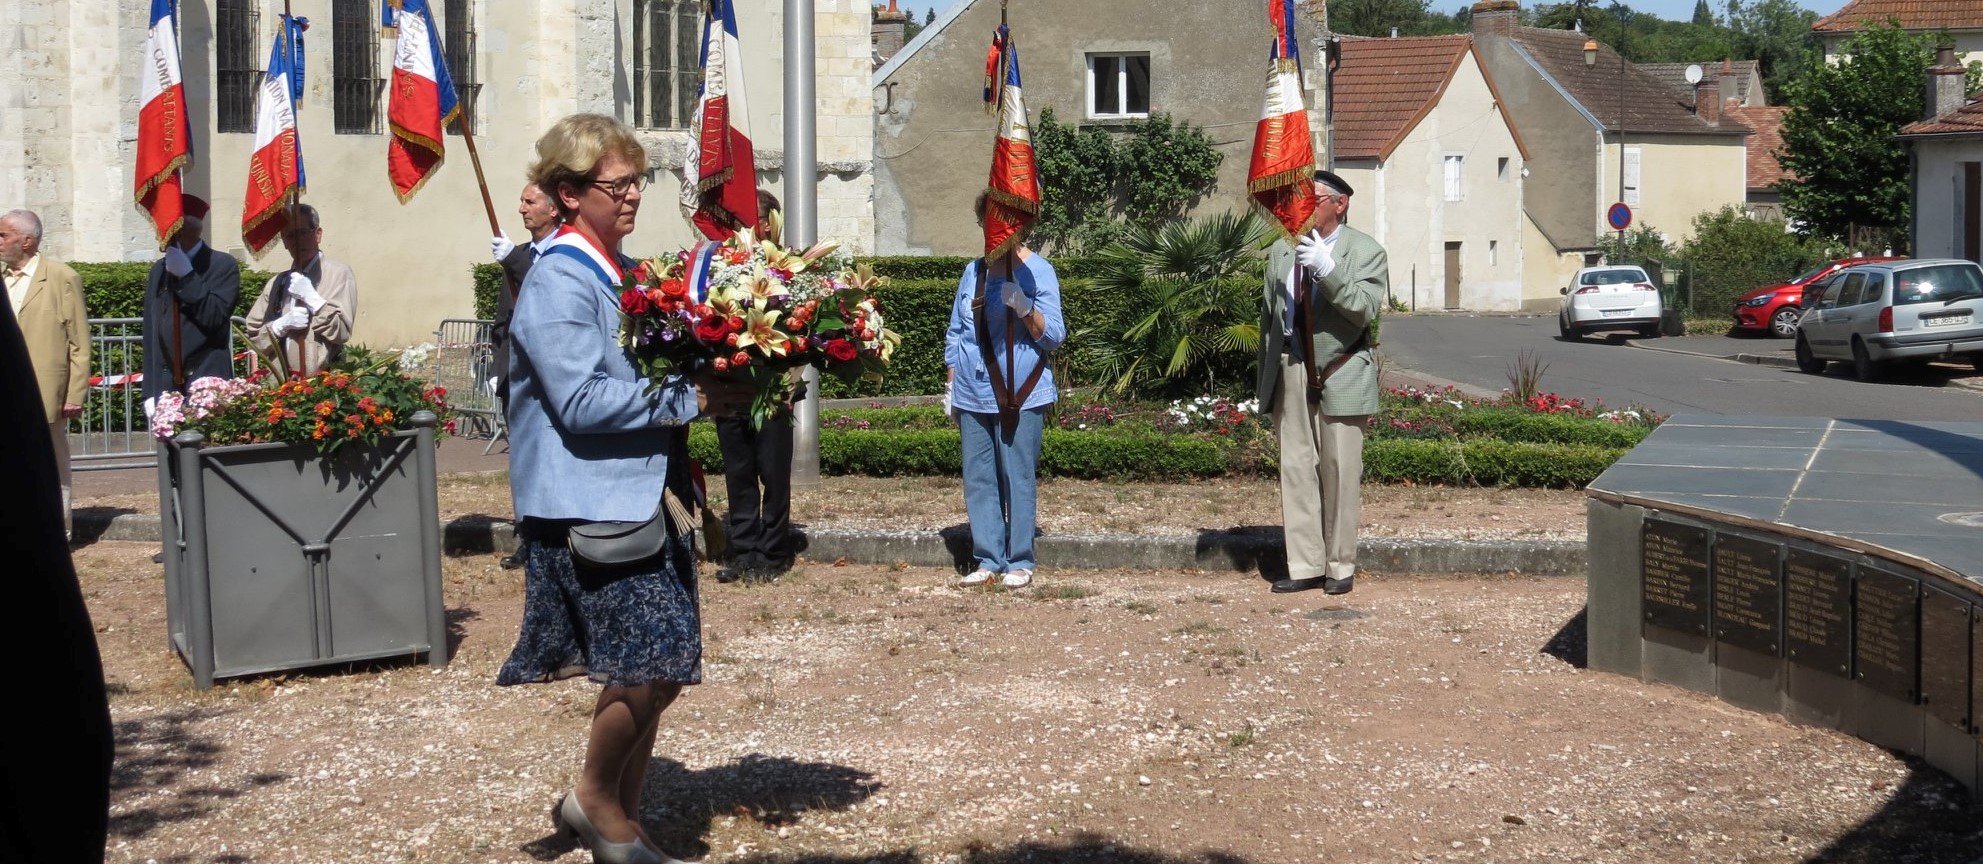 Dépôt de gerbe par Nadia SOLLOGOUB le dimanche 4 août 2019 à Neuvy-sur-Loire lors de la commémoration des bombardements de l'été 44